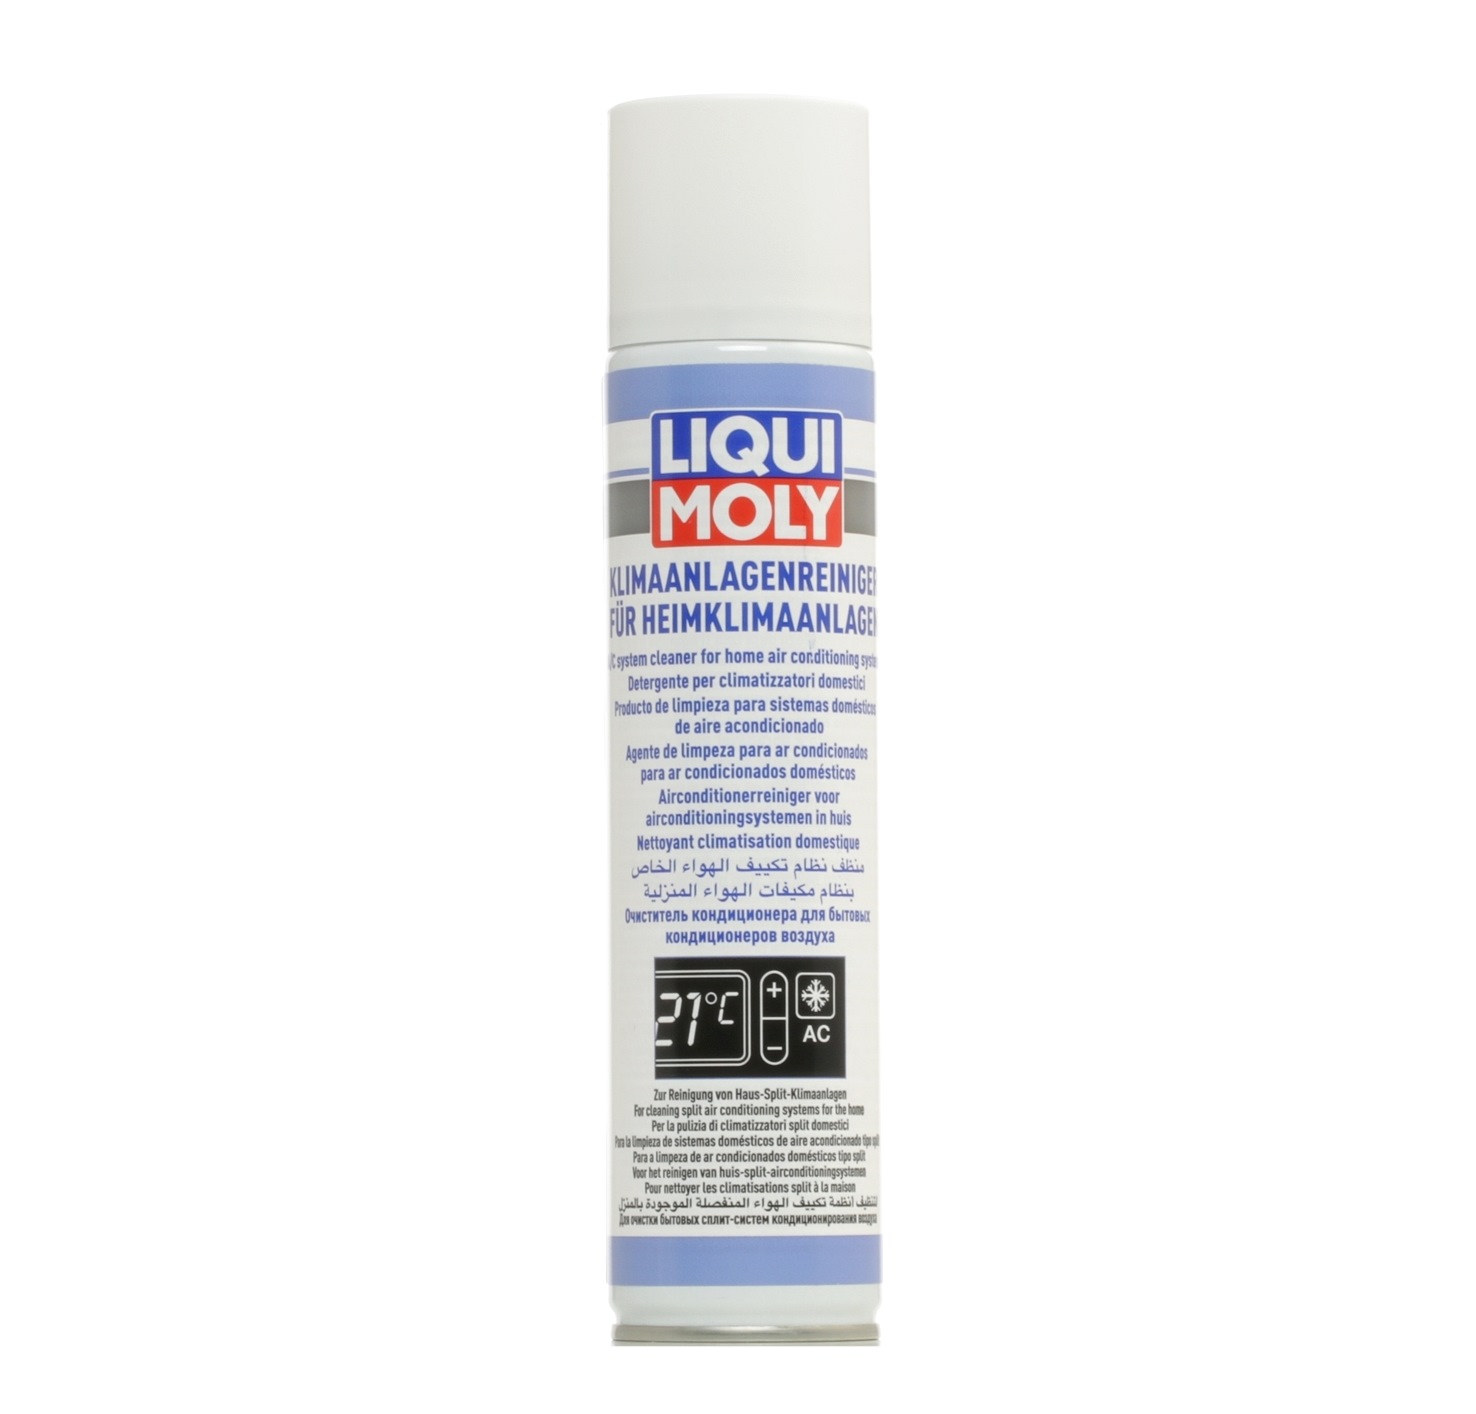 LIQUI MOLY Spray de désinfection pour Climatisations 21485